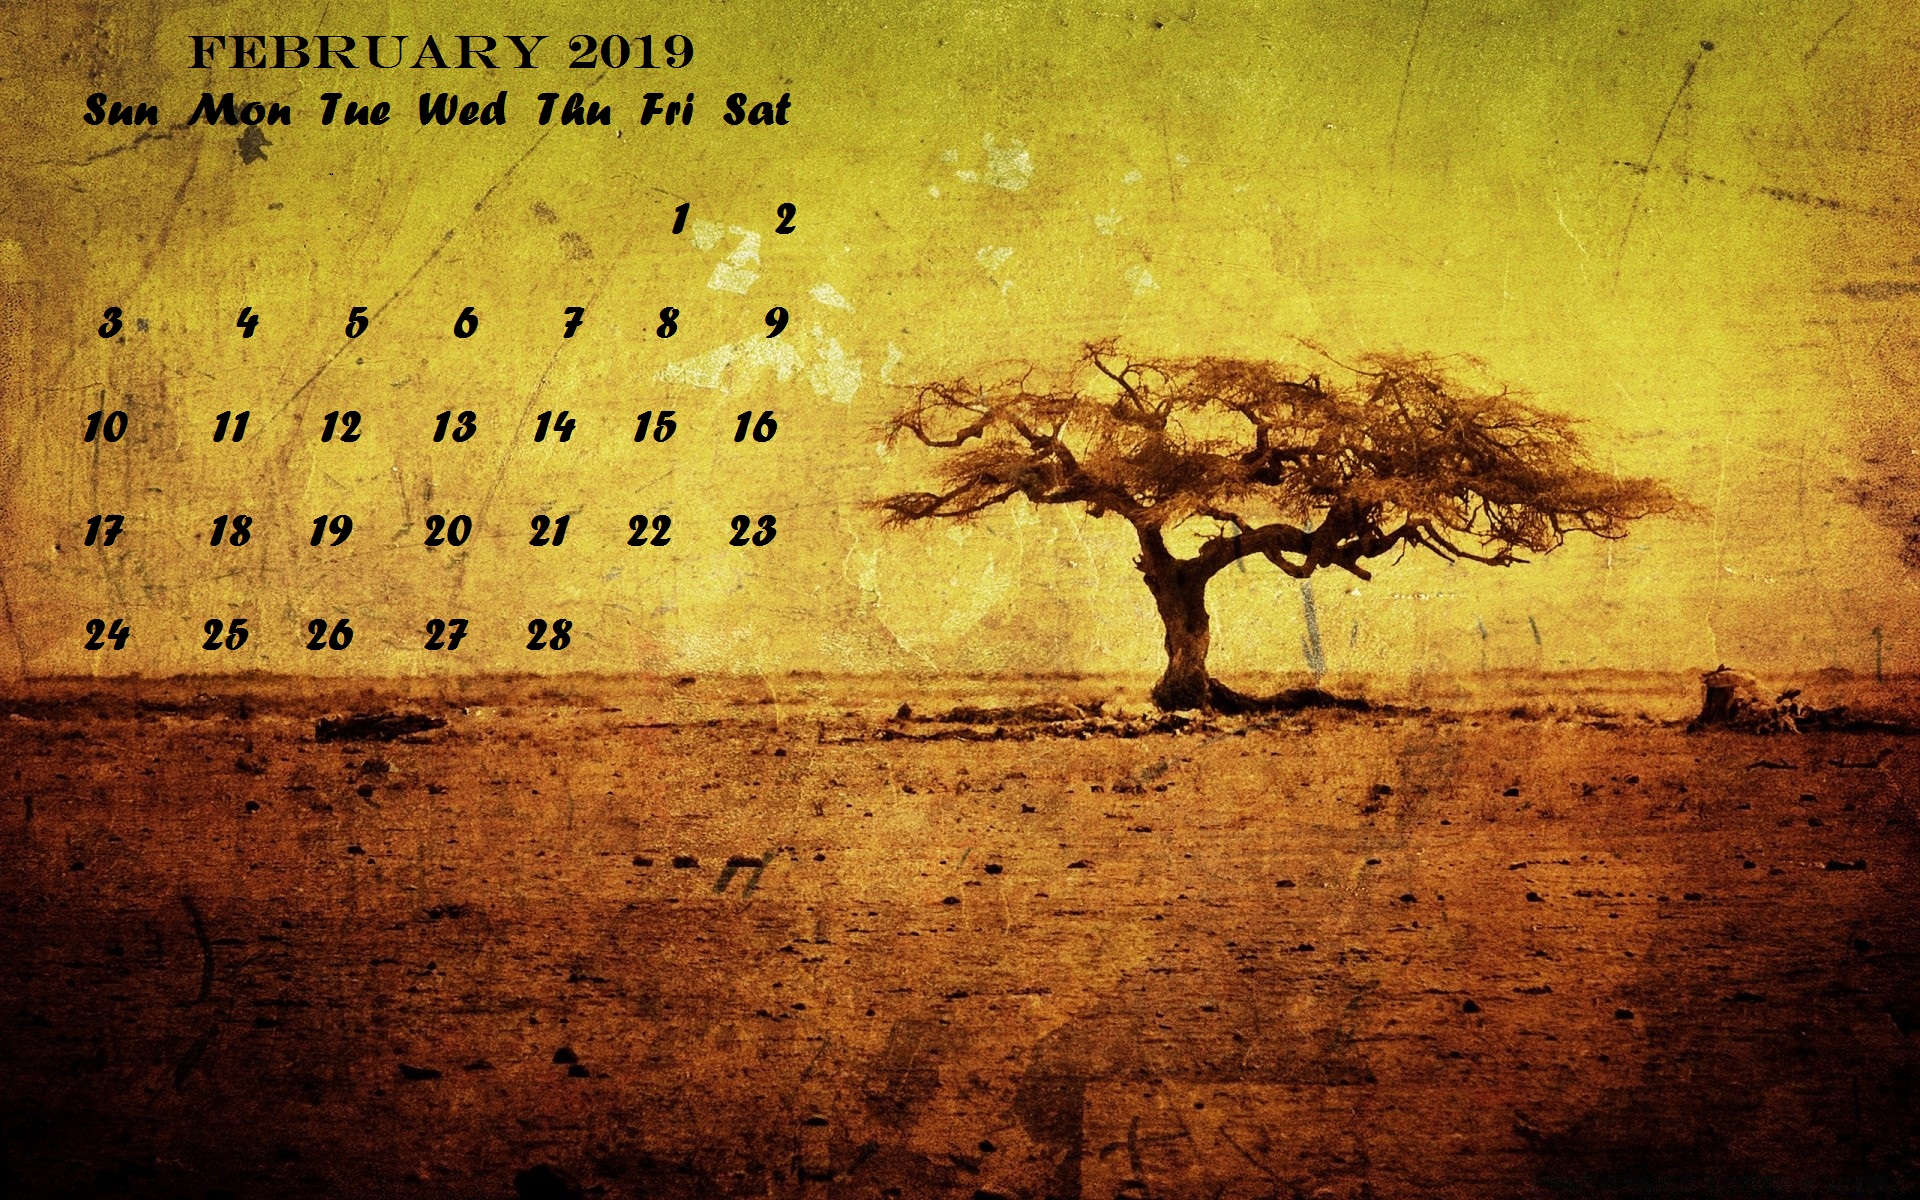 February 2019 Desktop Calendar Wallpaper